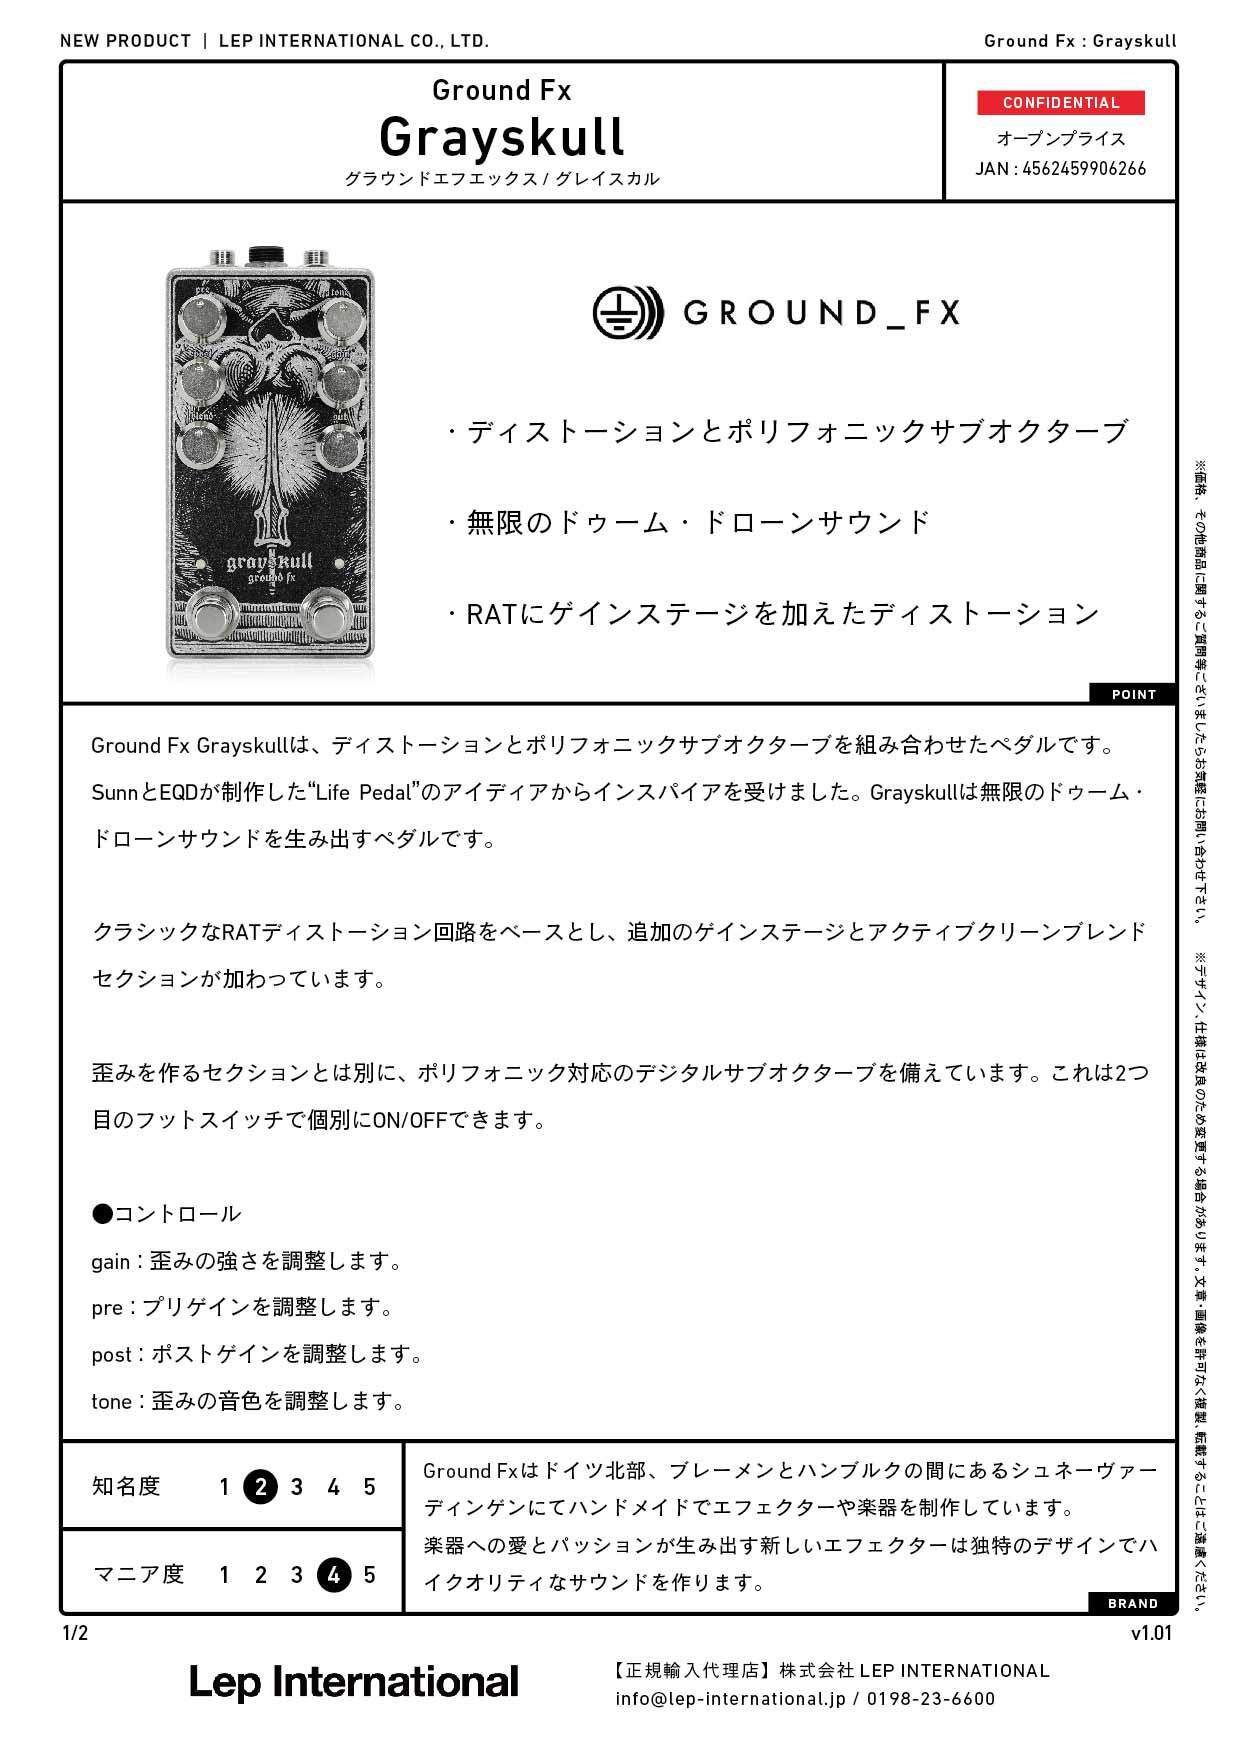 Ground Fx / Grayskull